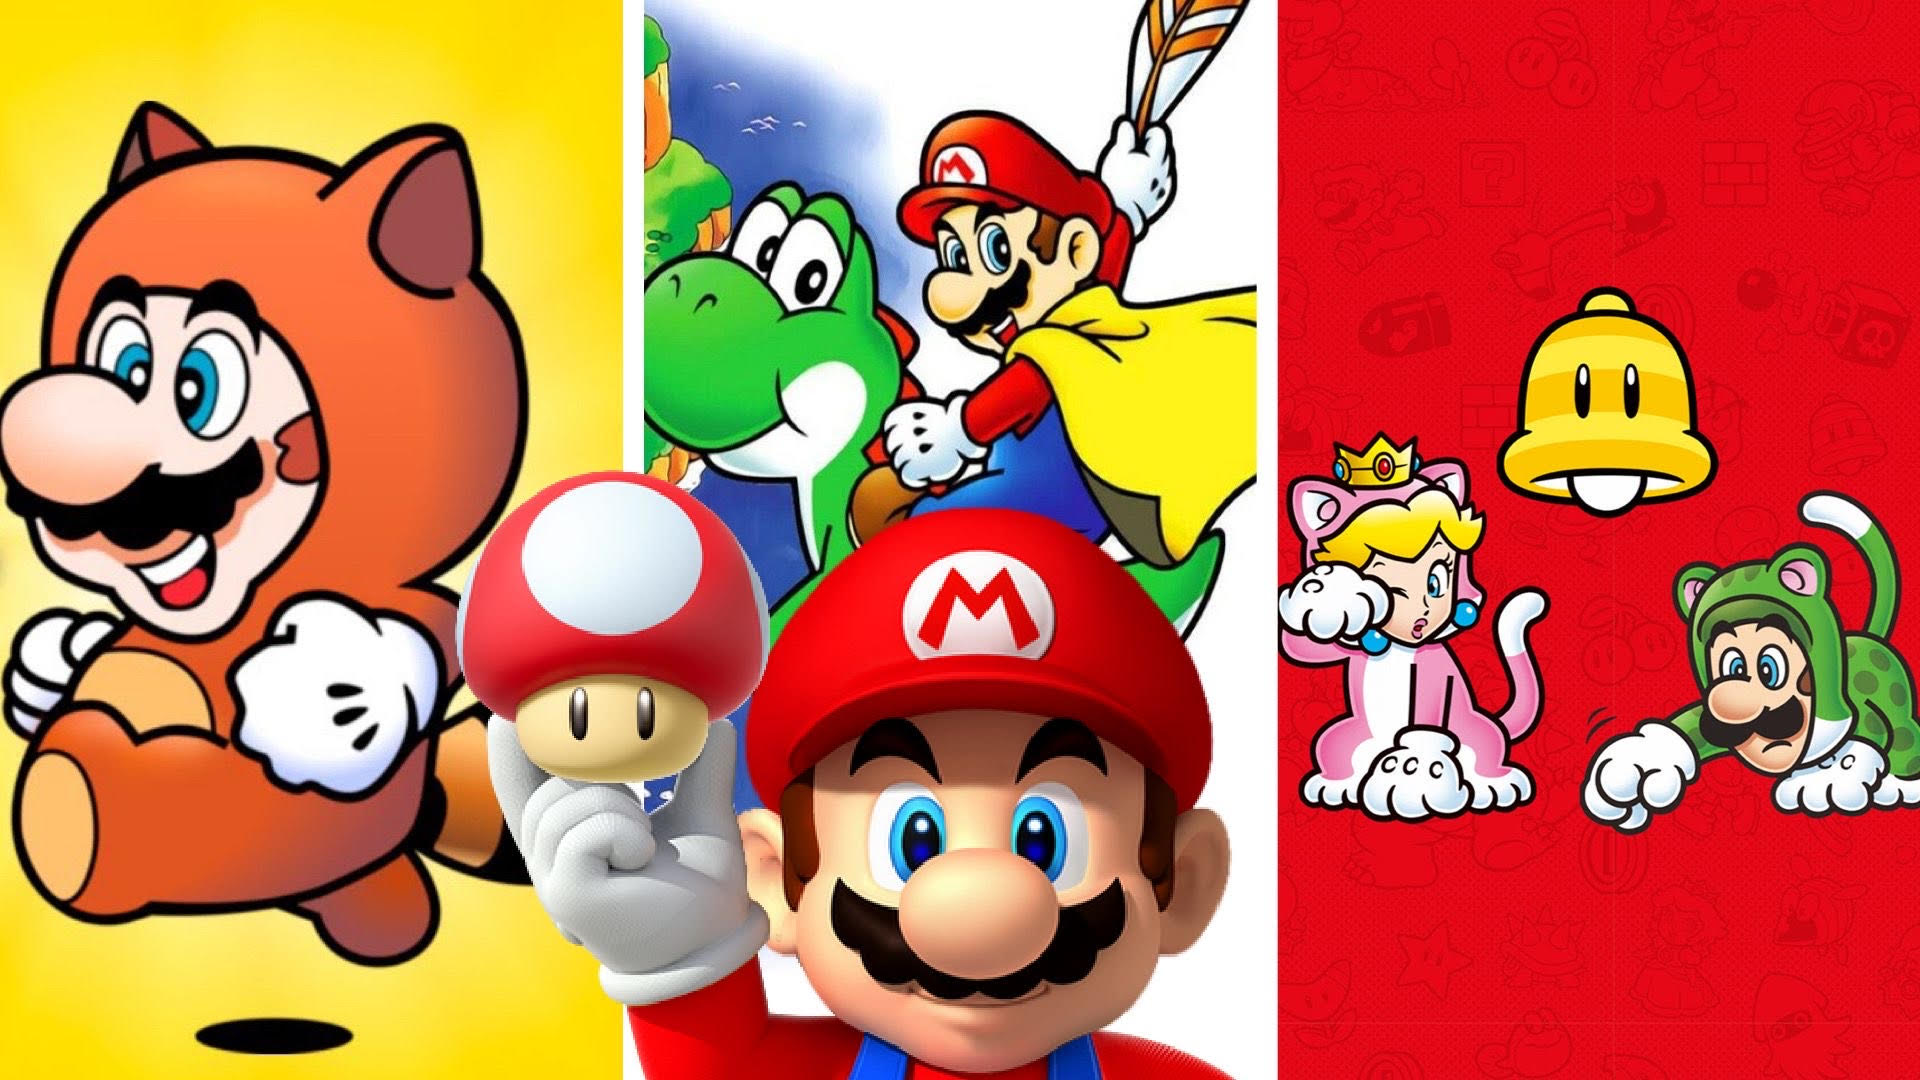 Super Mario Bros. Wonder ganha vídeo que mostra os power-ups